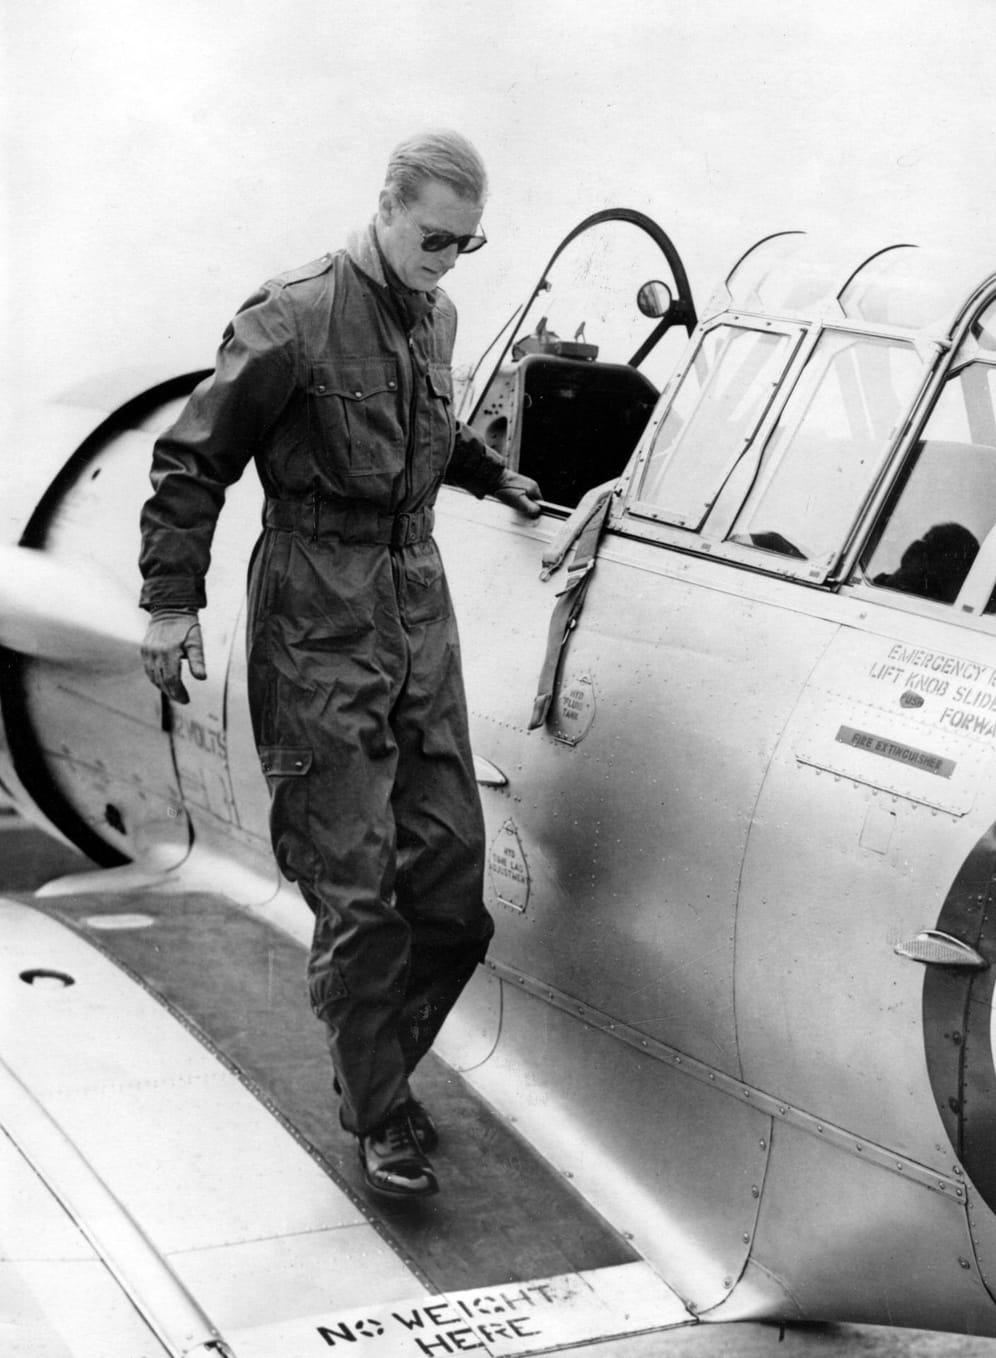 Philip steigt 1953 aus einem Trainingsflugzeug: Der Prinz wurde während seiner Zeit bei der königlichen Familie zum Piloten ausgebildet.